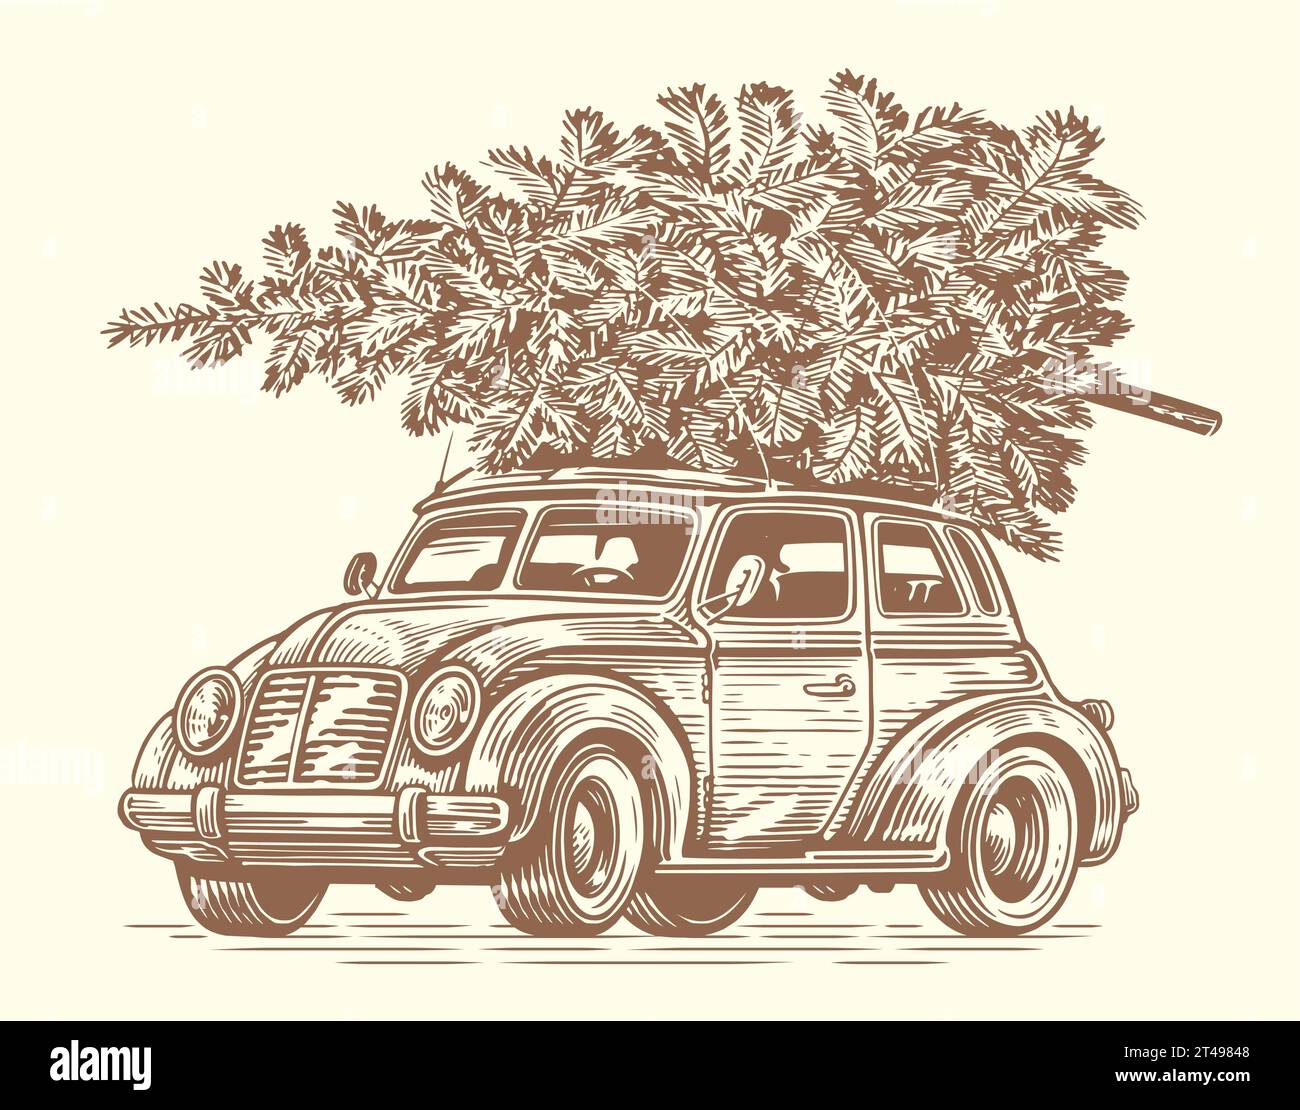 Retro-Auto mit einem Weihnachtsbaum oben. Abbildung im Skizzenstil. Handgezeichnete Vektorgrafik Stock Vektor